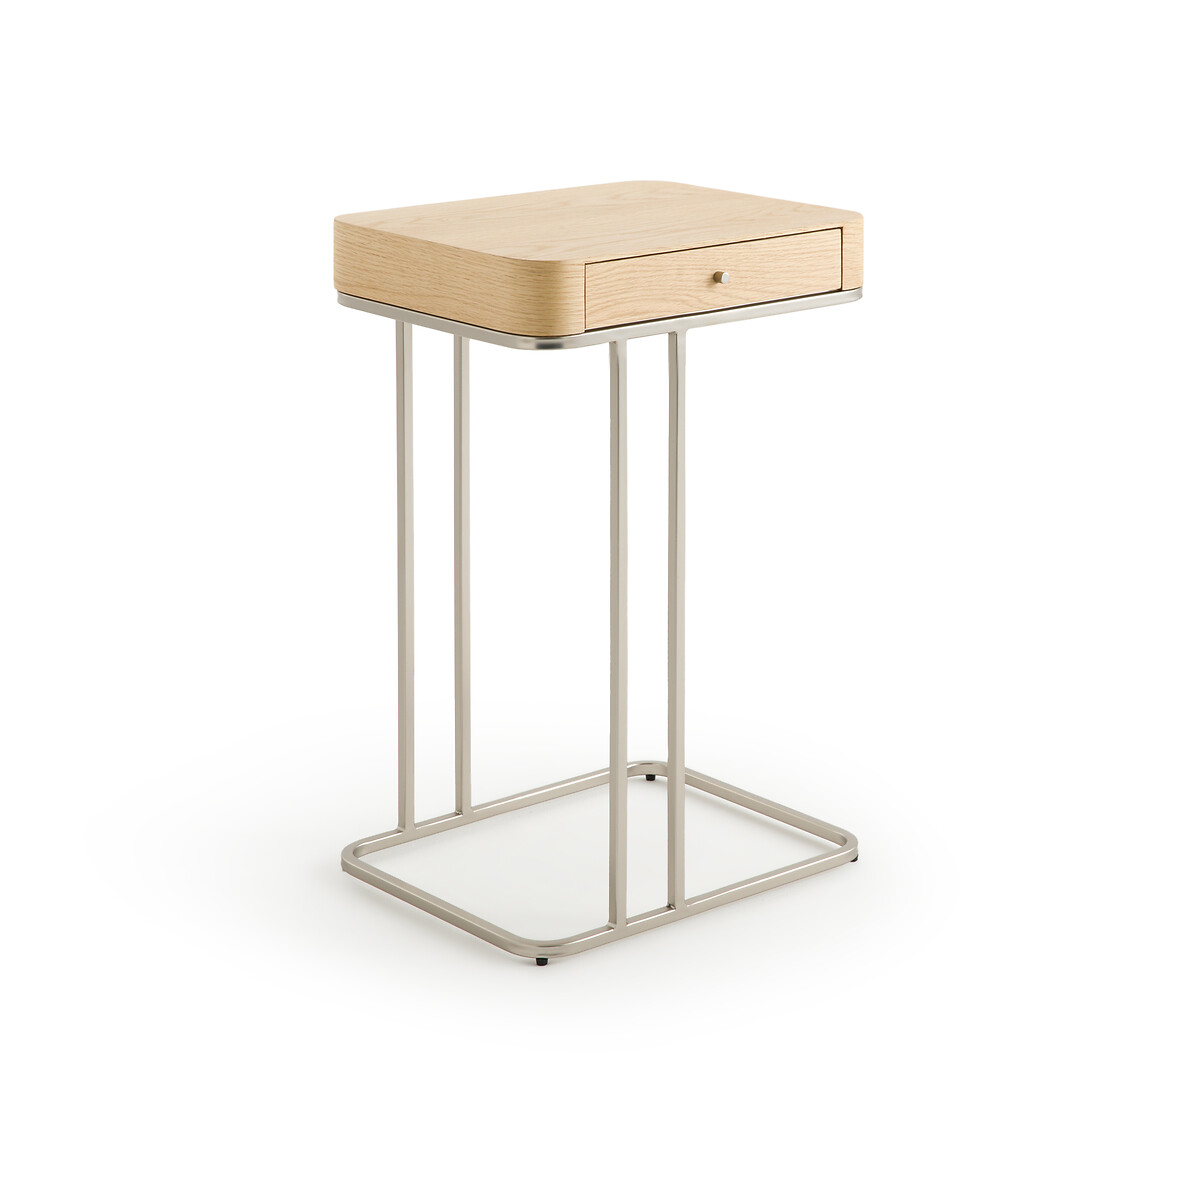 Столик прикроватный Trebor дизайн Э Галлина единый размер каштановый столик прикроватный trebor дизайн э галлина единый размер каштановый